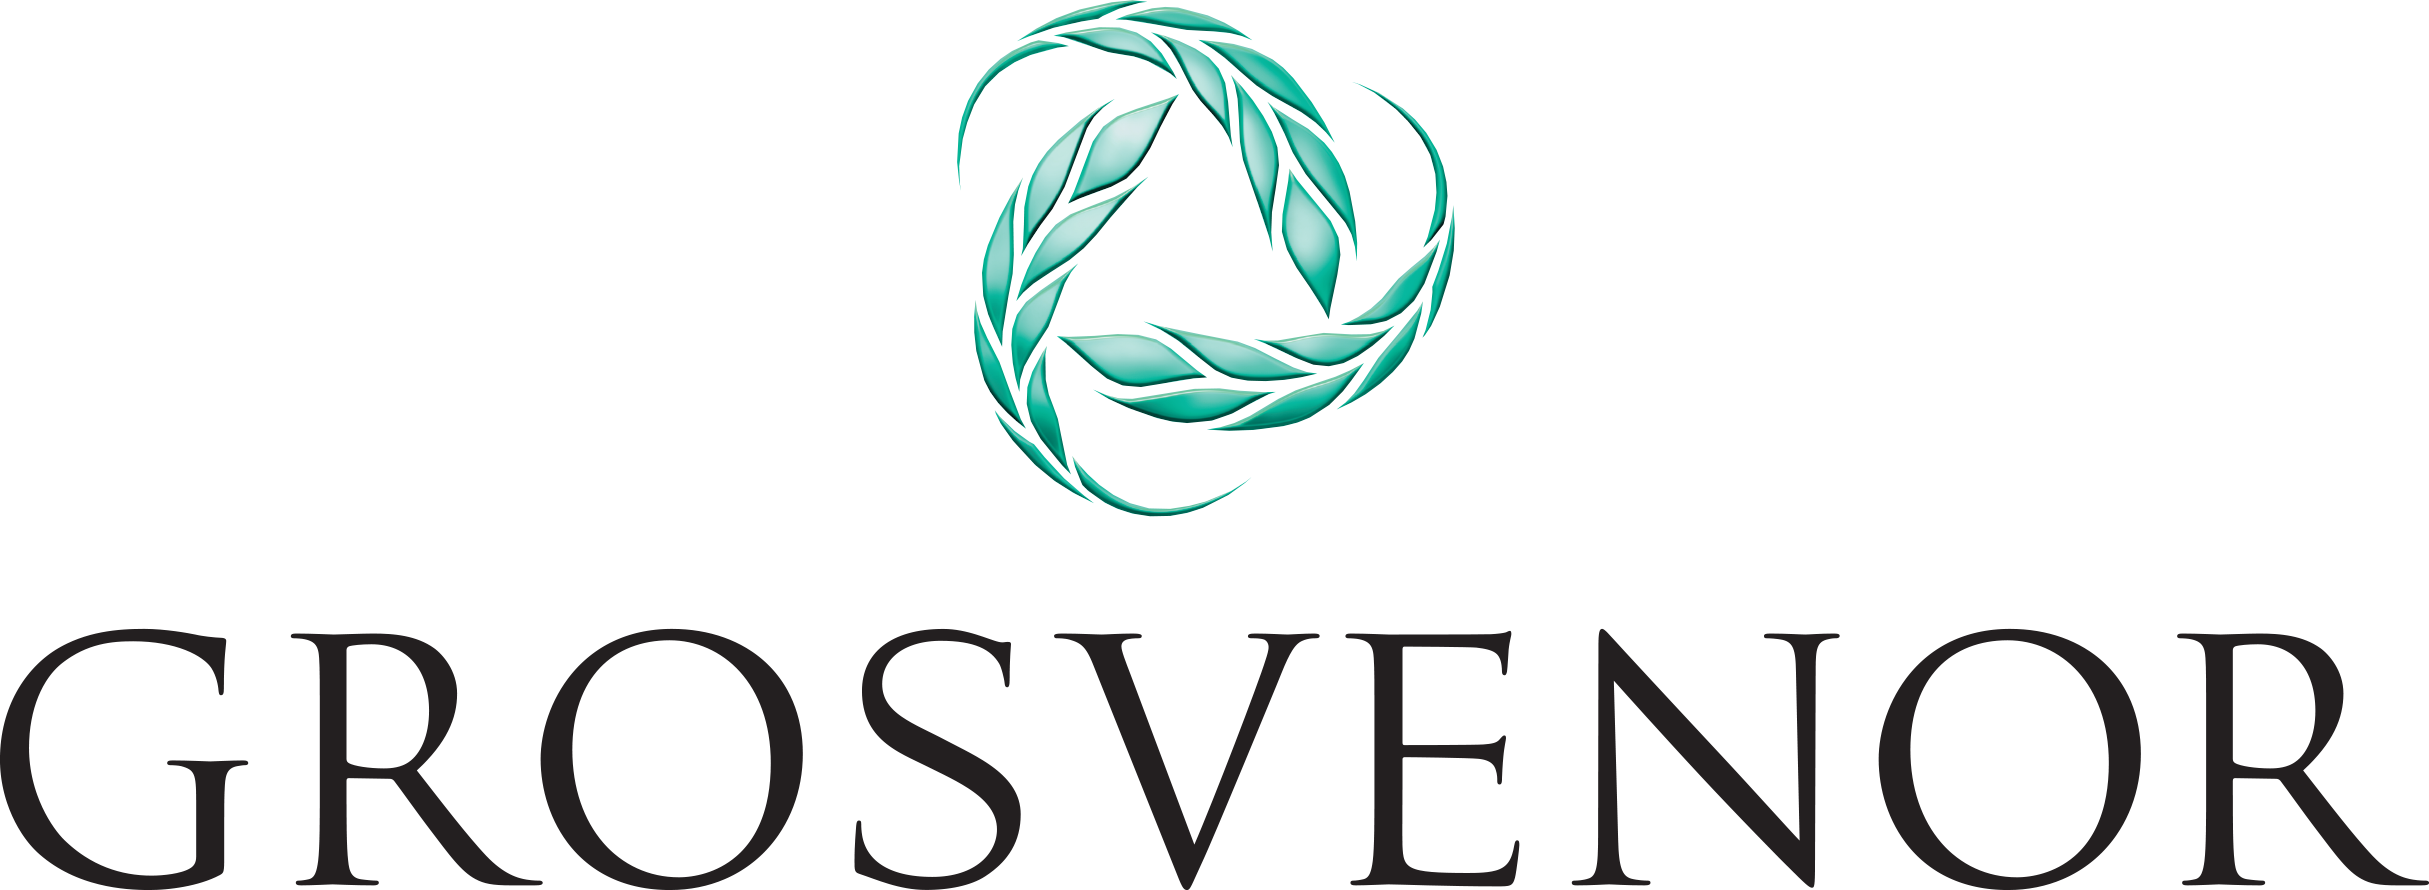 Grosvenor logo 